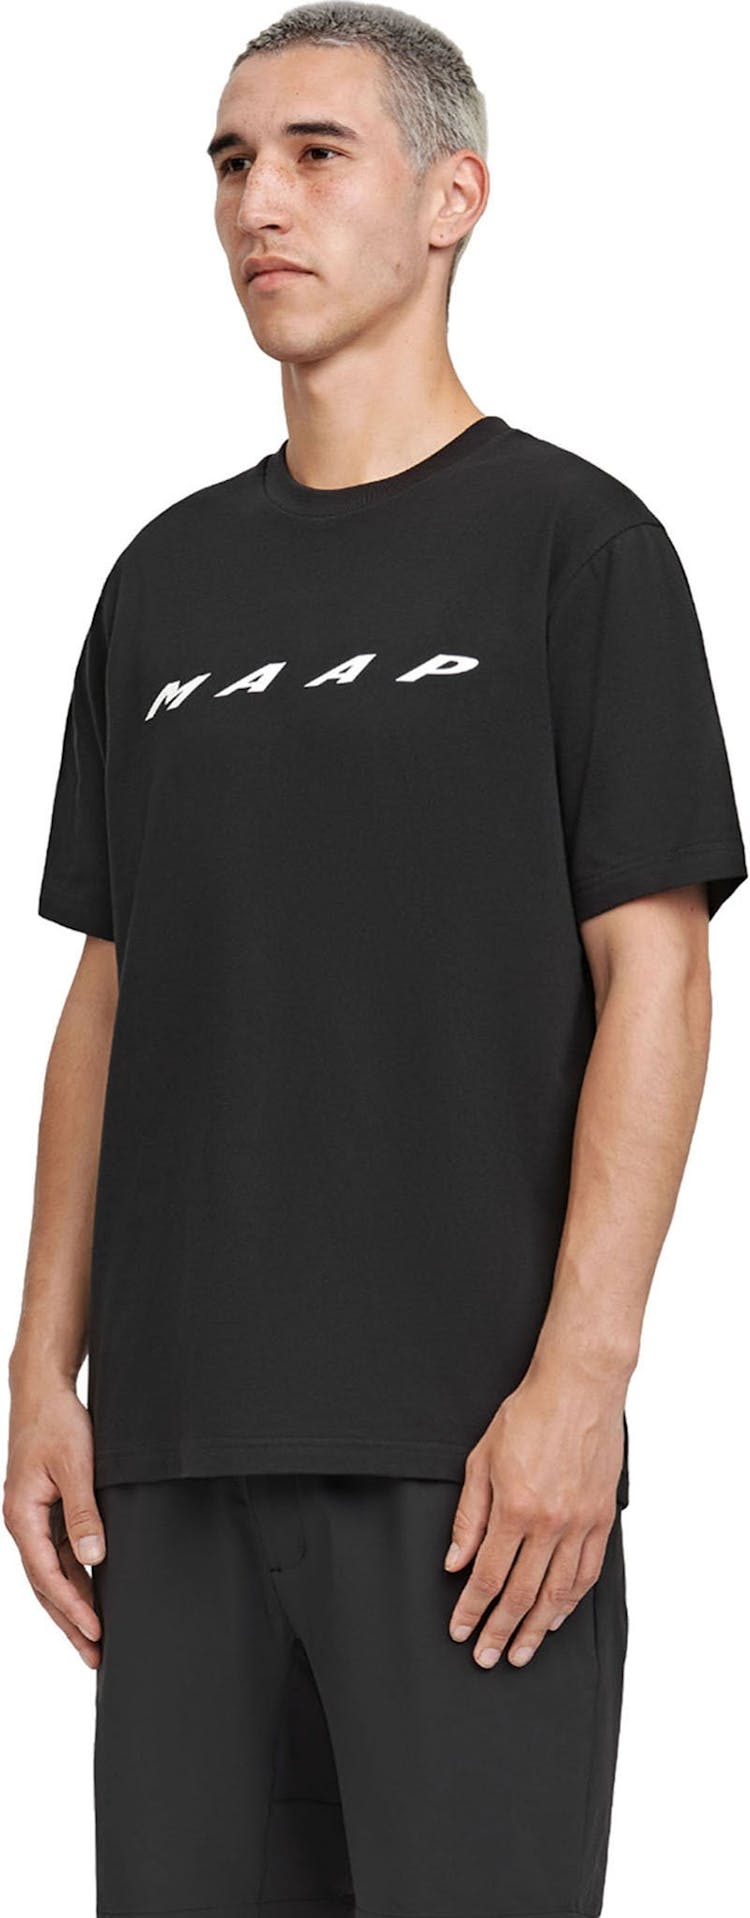 Numéro de l'image de la galerie de produits 6 pour le produit T-shirt Evade - Homme